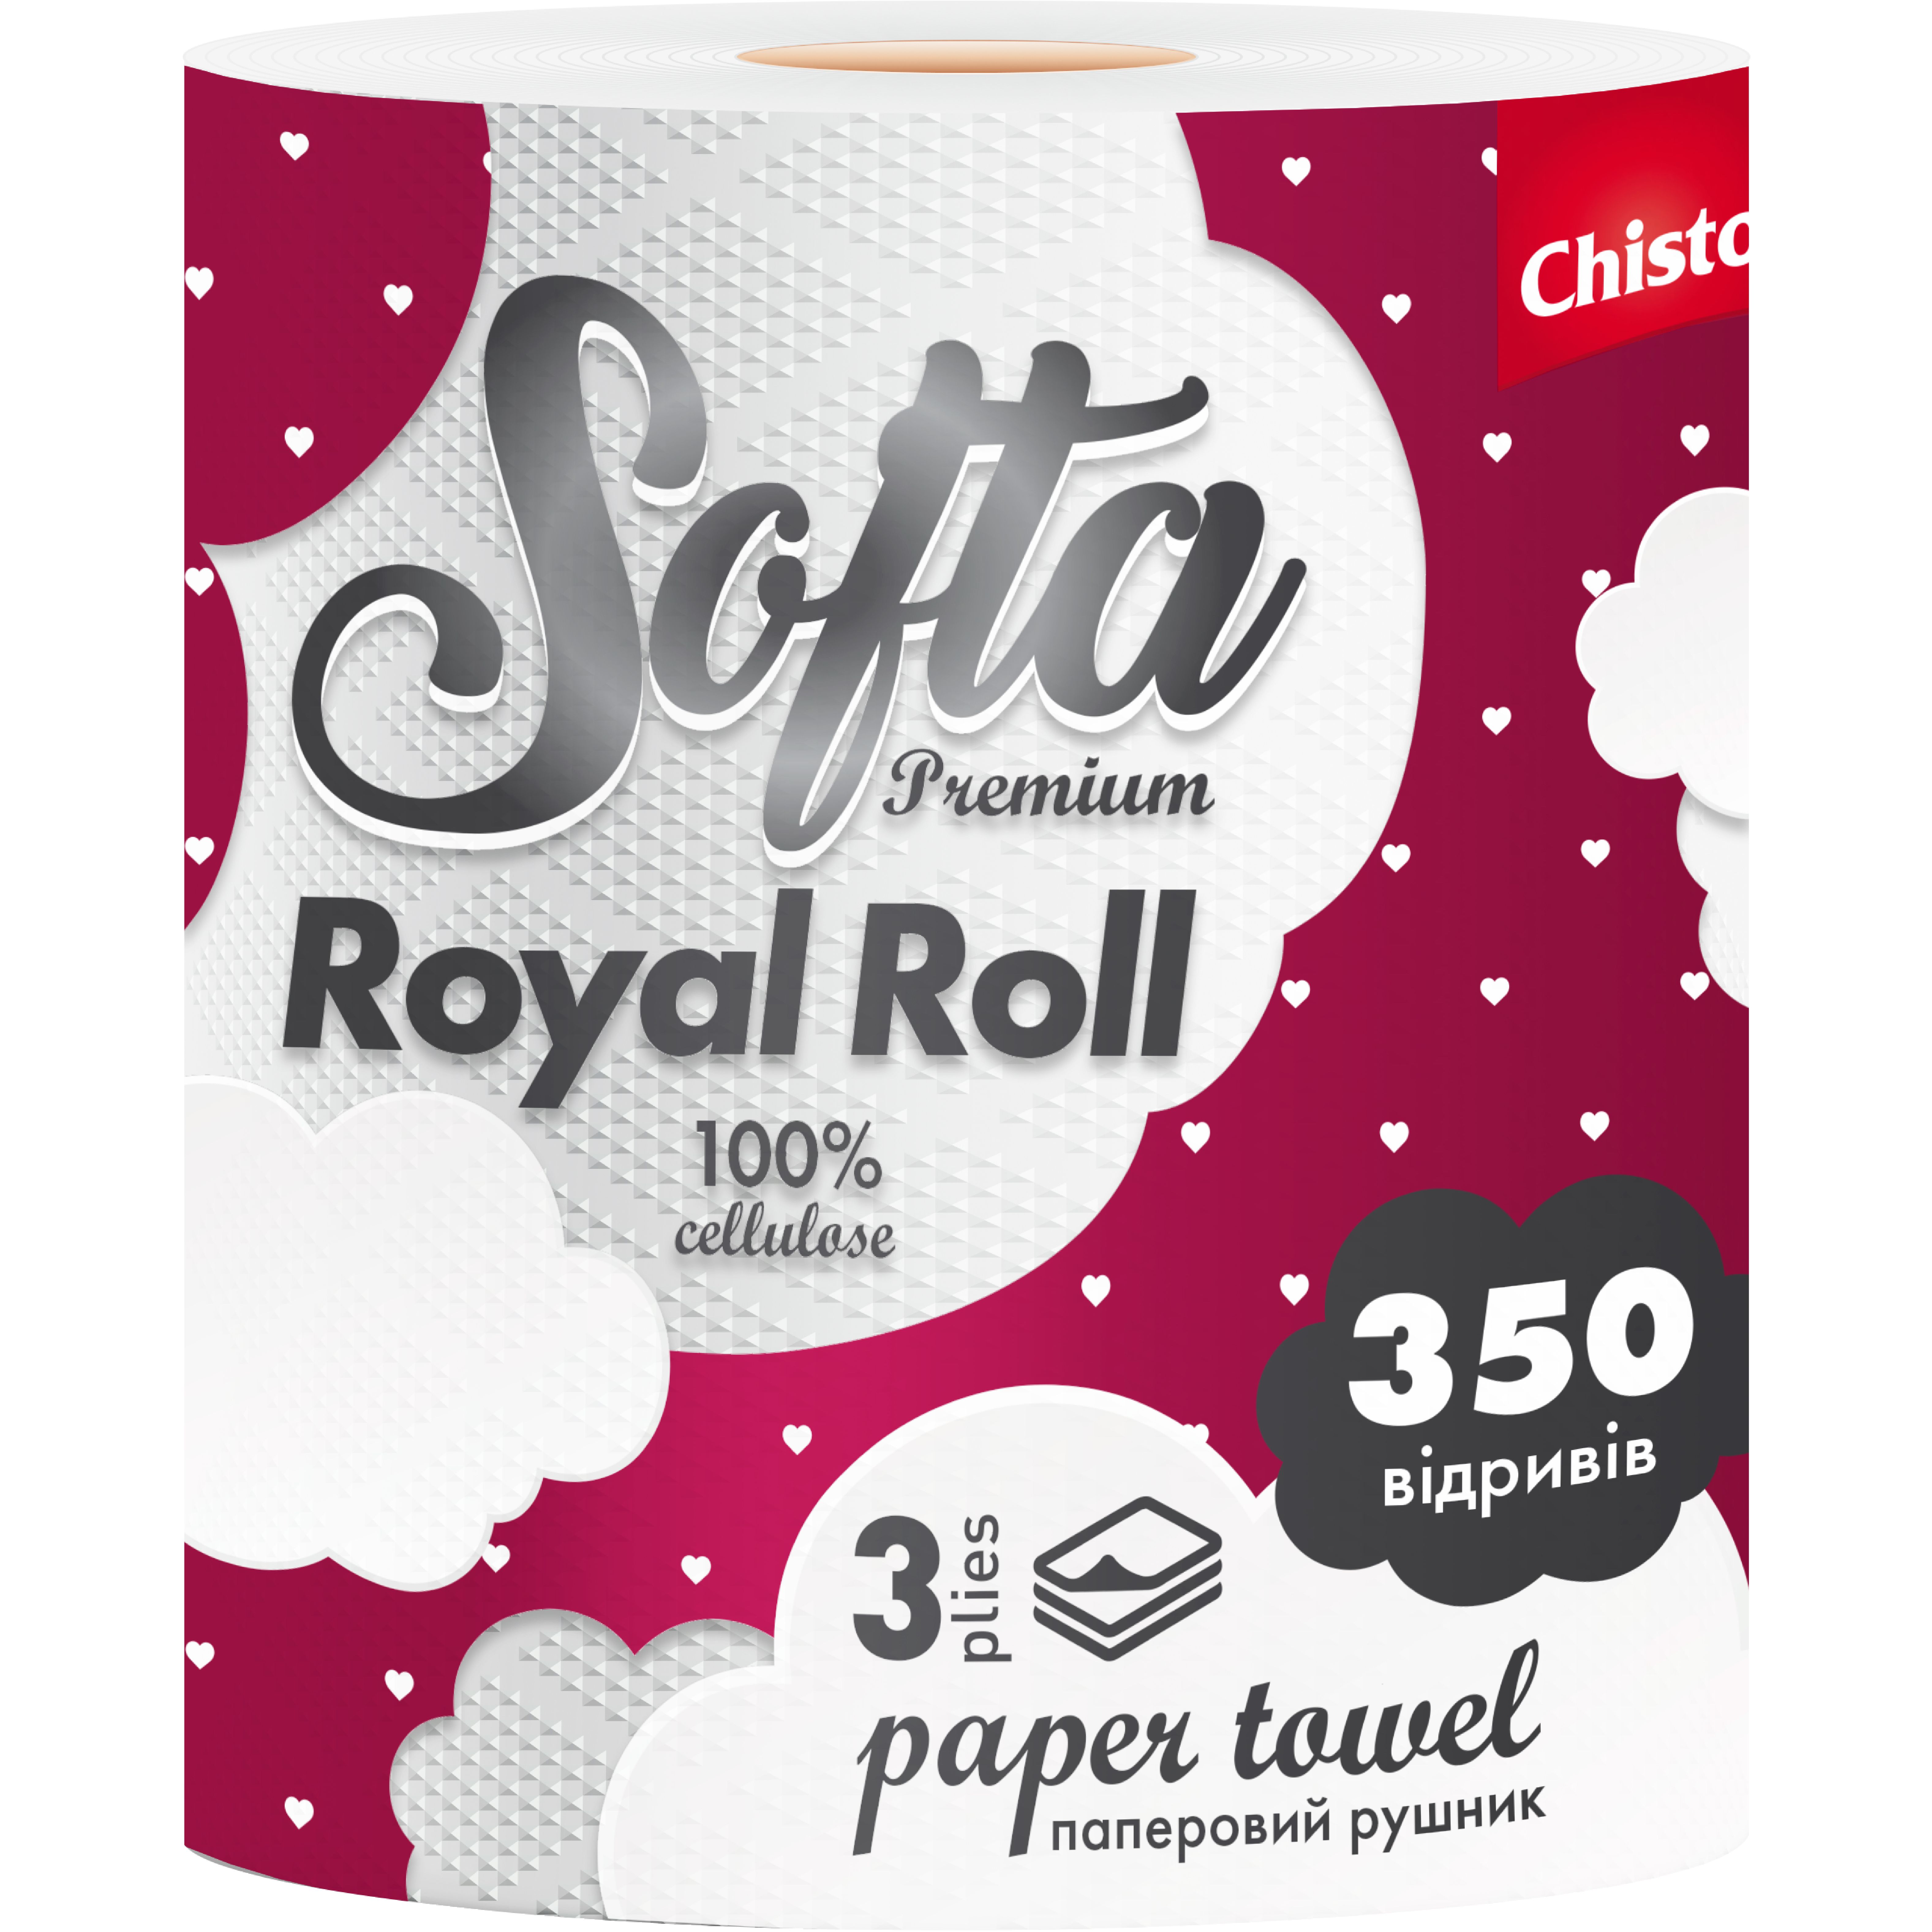 Паперові рушники Chisto Softa Royl Roll на гільзі тришарові 350 відривів 1 рулон - фото 1